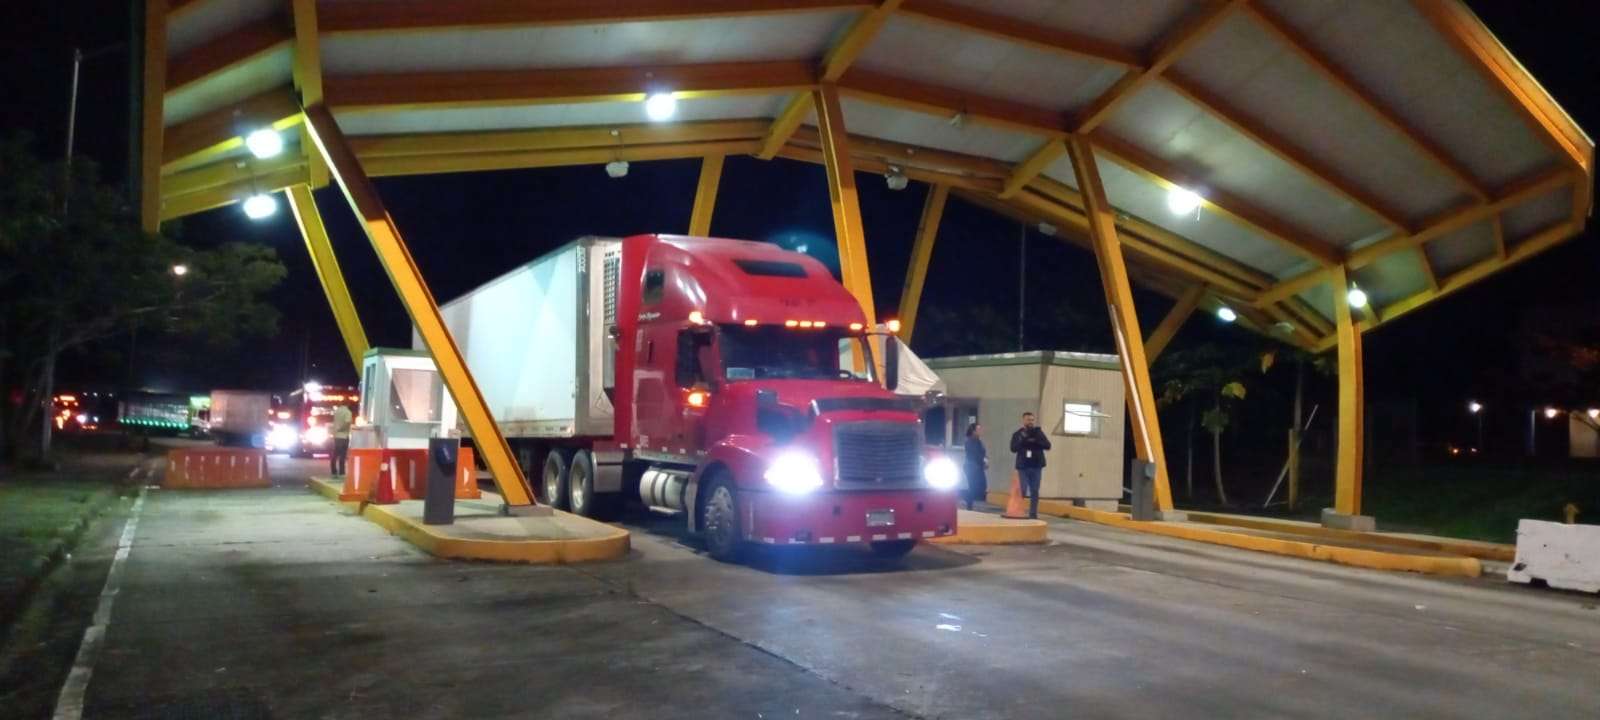 Escoltados por unidades de la Policía, los camiones cargados con productos agrícolas llegaron a Merca Panamá. Videos/Fotos Alexander Santamaría 